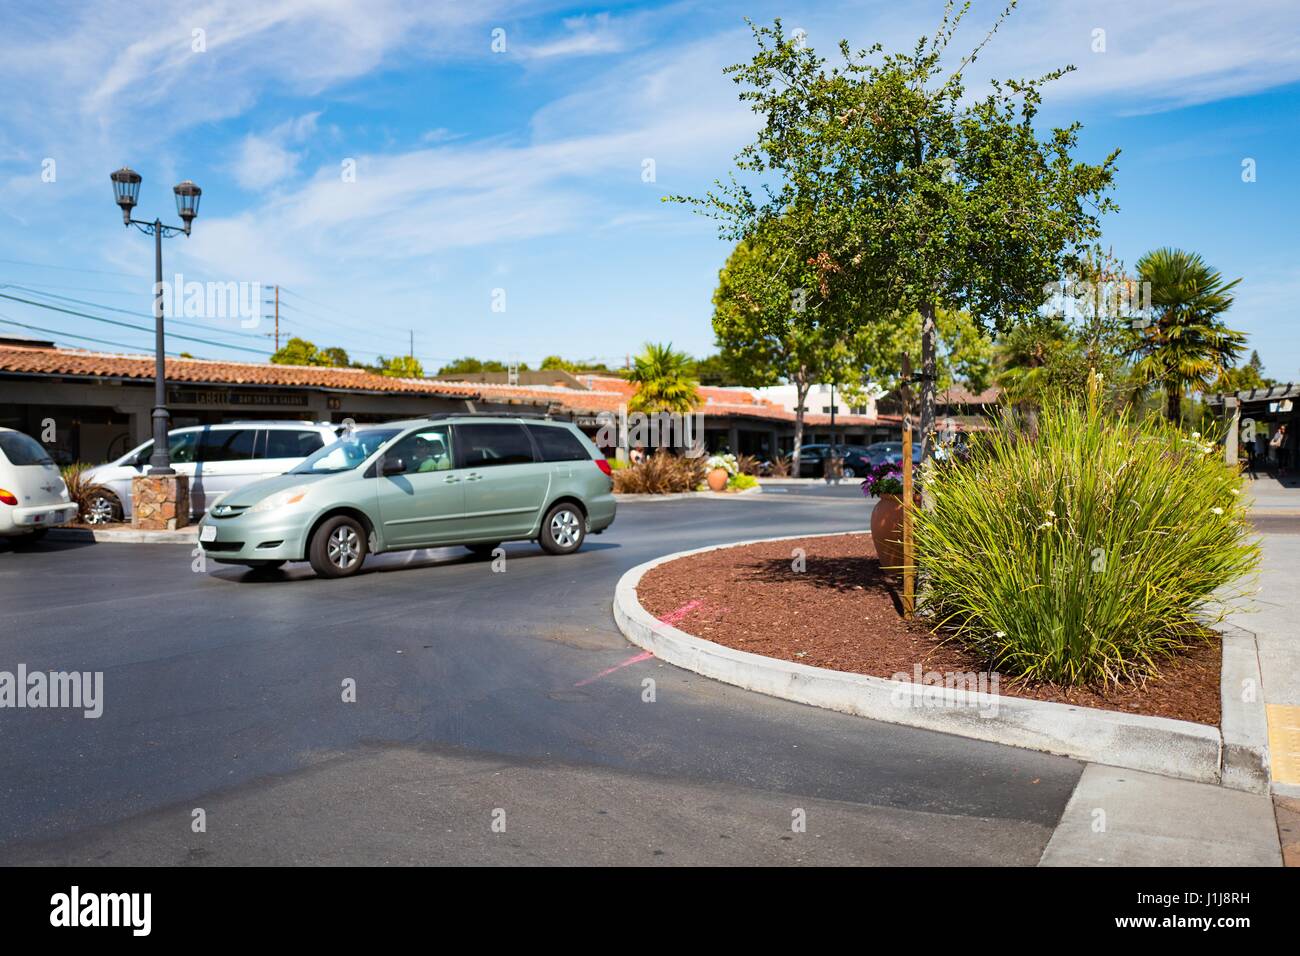 Un minibus passe par le stationnement de la ville et centre commercial du pays dans la Silicon Valley ville de Palo Alto, Californie, le 3 septembre 2016. La ville et la campagne était parmi les premiers centres commerciaux construits à Palo Alto. Banque D'Images